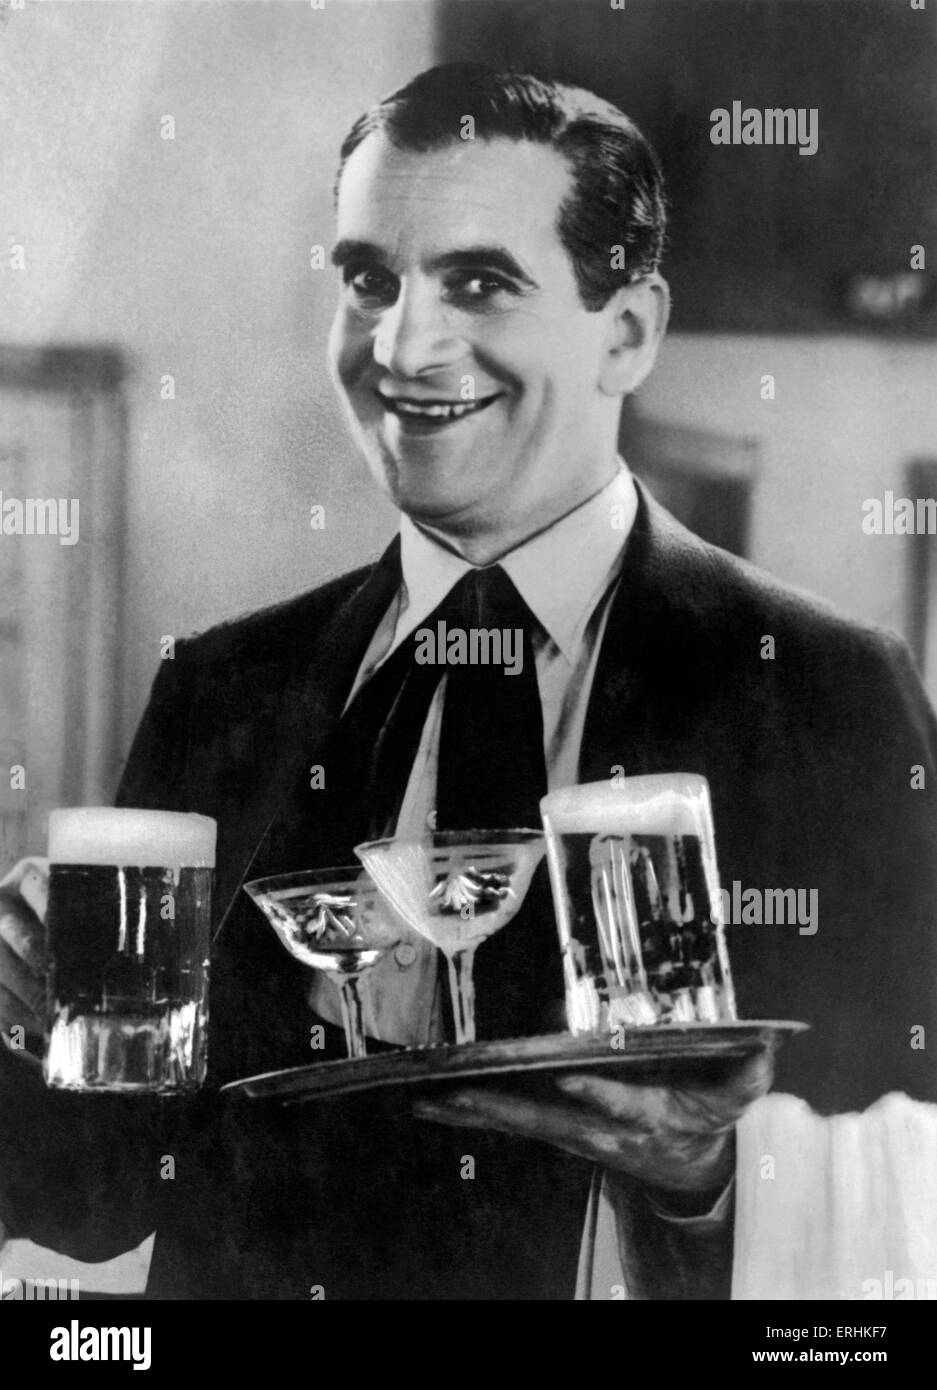 Al Jolson, chanteur et acteur, de la réalisation d'un plateau de boissons. Photo du film. 26 mai 1886 - 23 octobre 1950. Banque D'Images